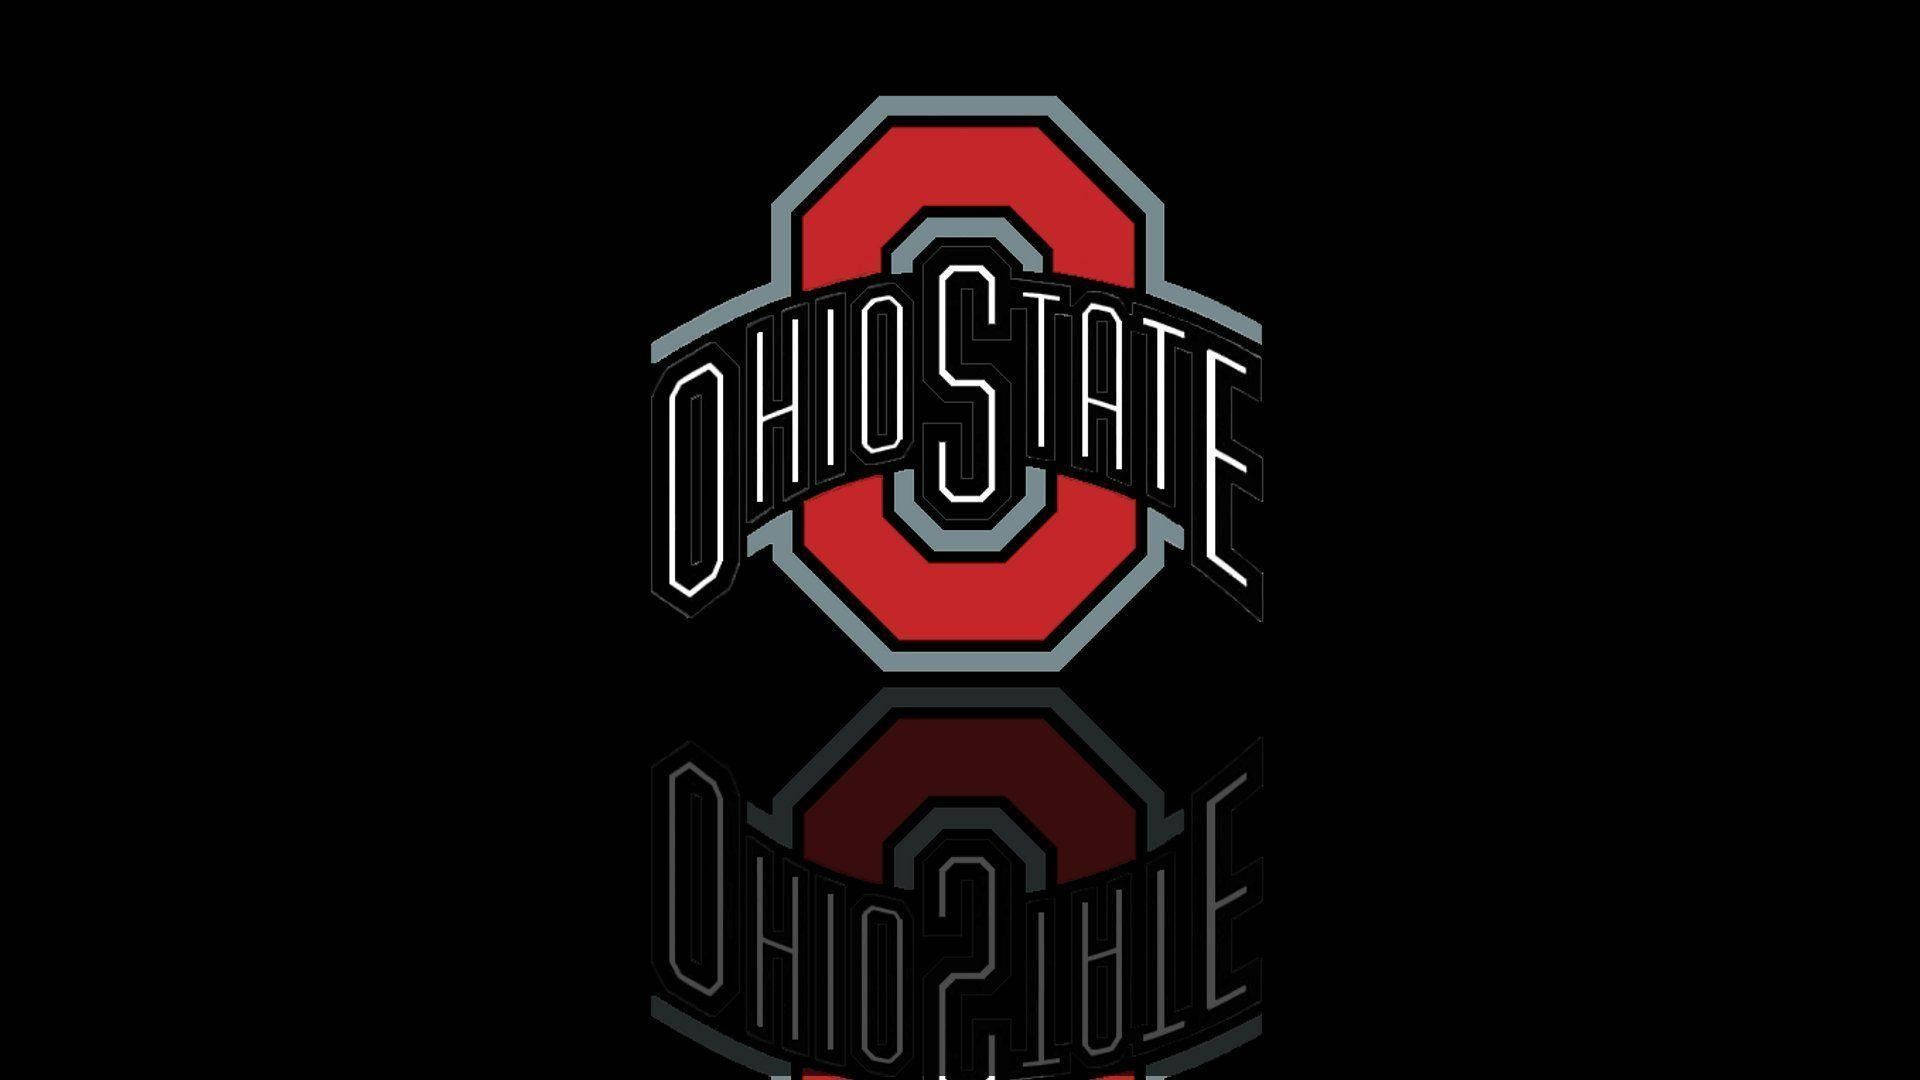 Dark Ohio State Team Background